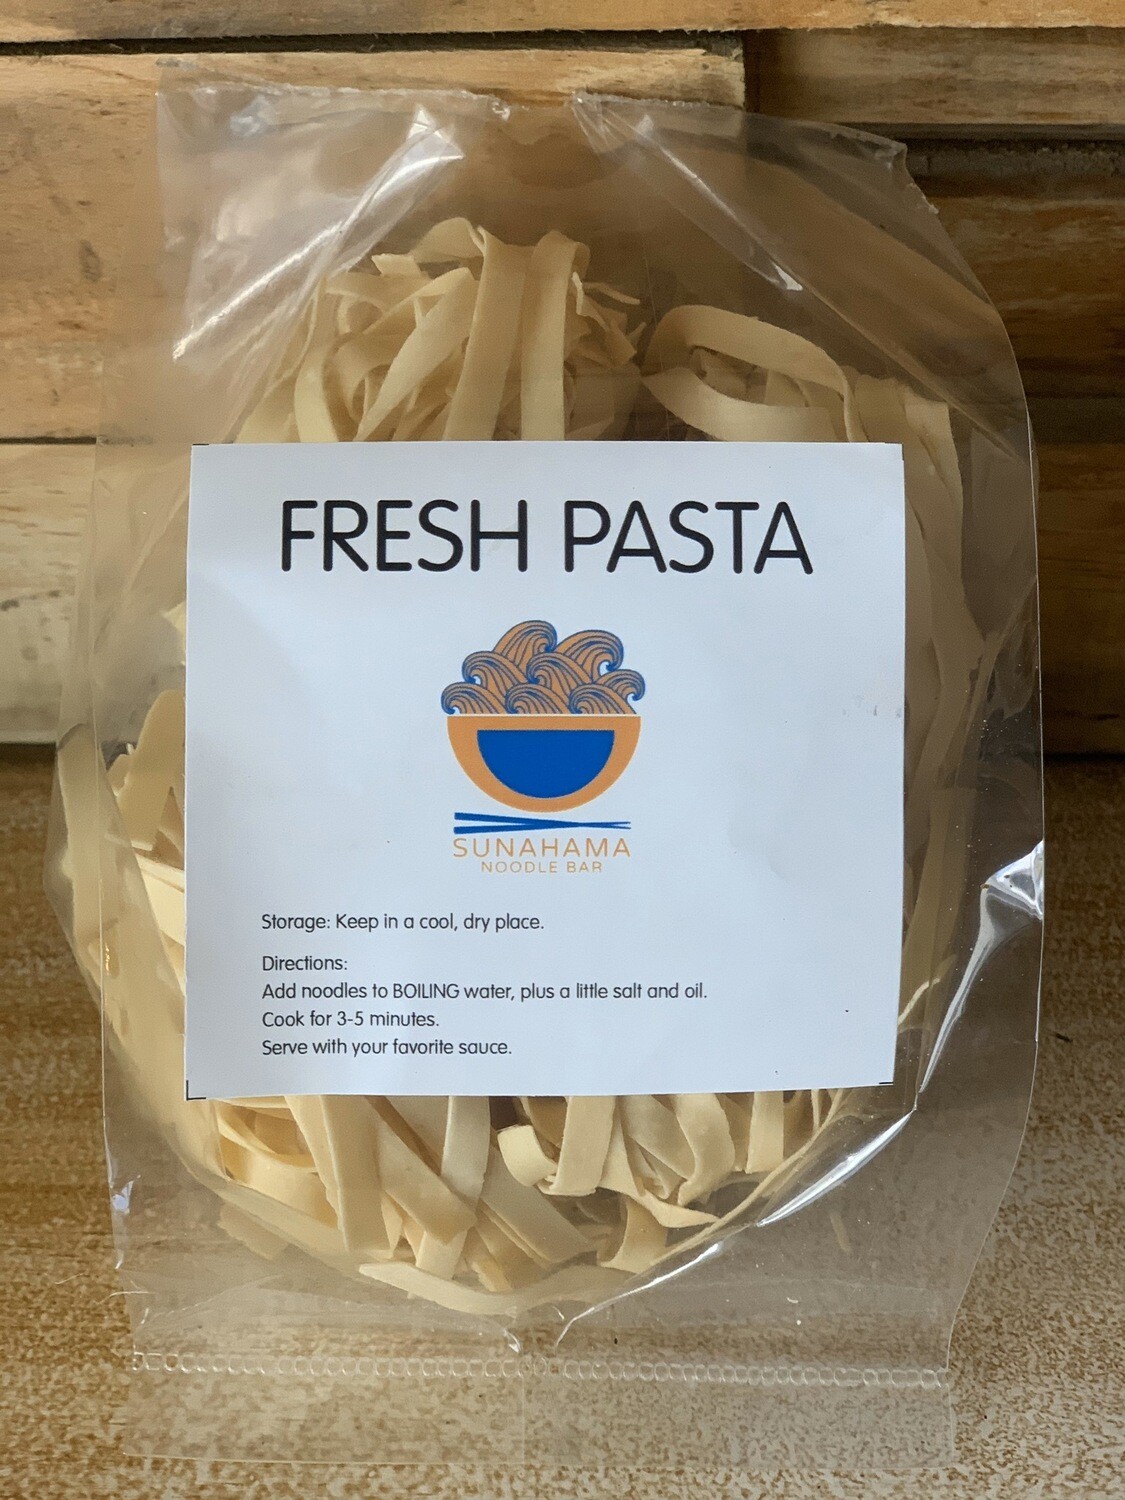 Fresh Homemade Pasta